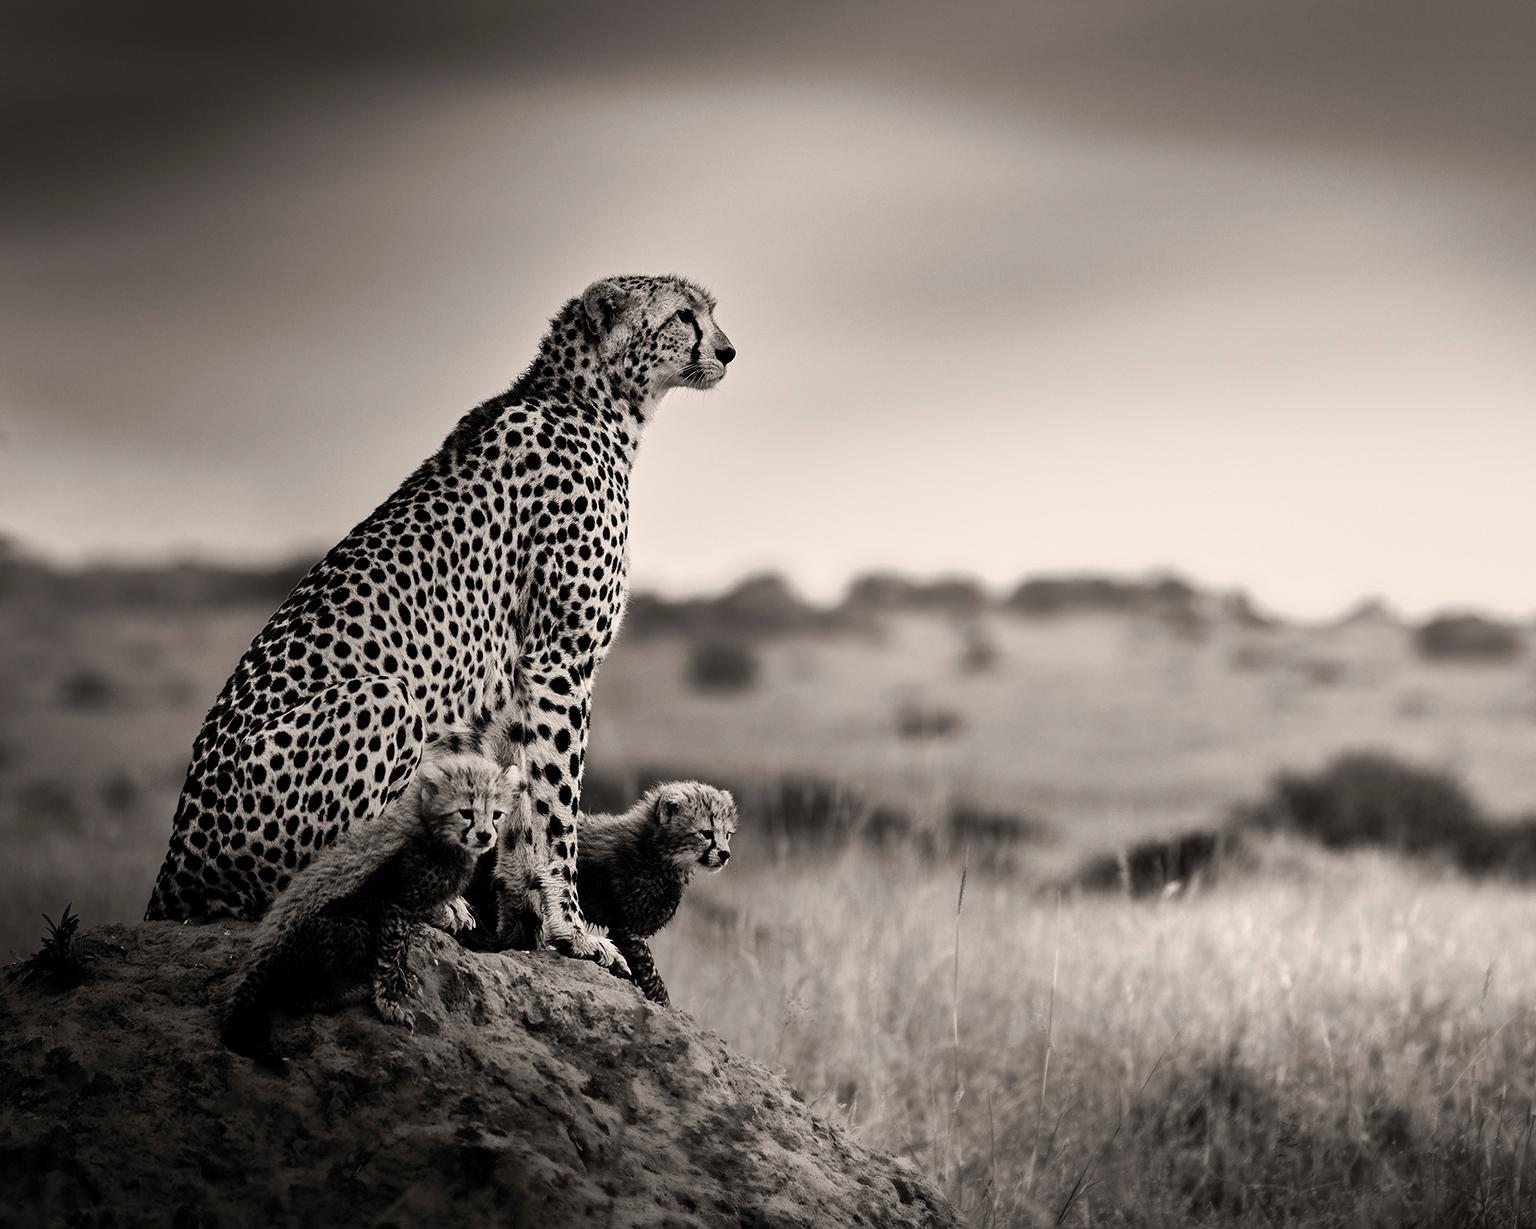 Cheetah with babies, photographie de blackandhwite, Afrique, portrait, faune